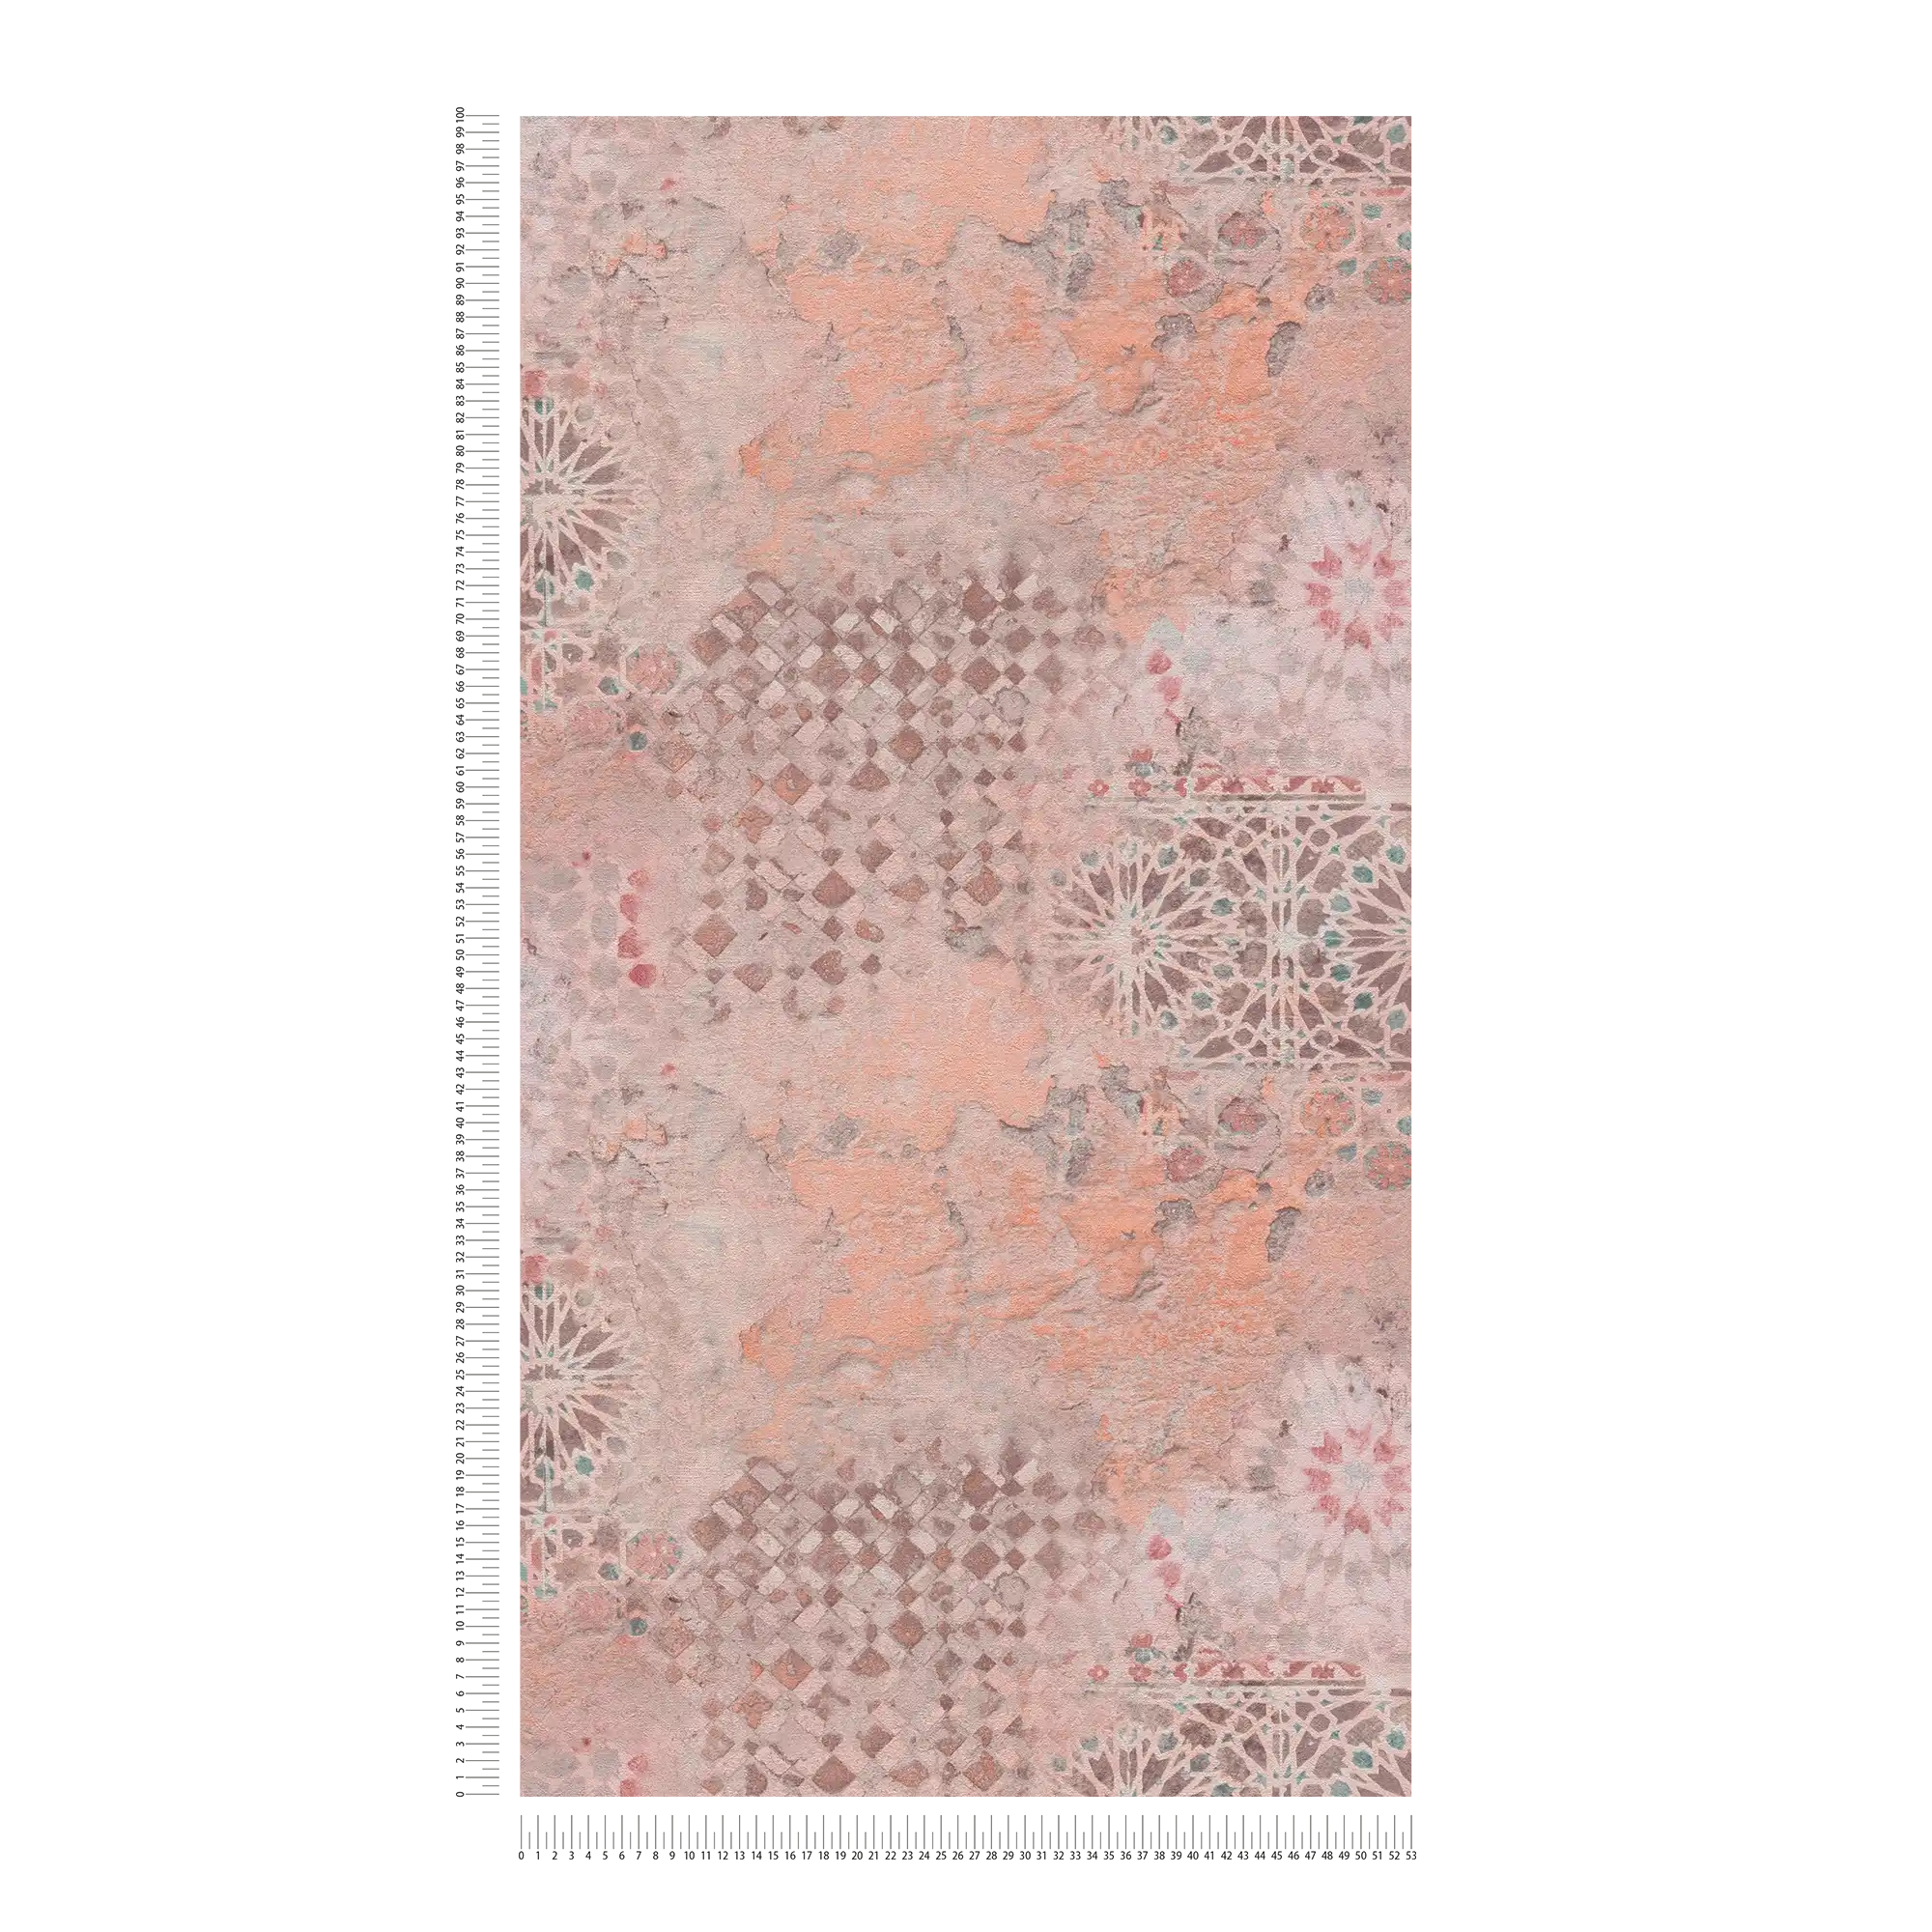             Carta da parati colorata in tessuto non tessuto con motivo a mosaico rustico - marrone, grigio, arancione
        